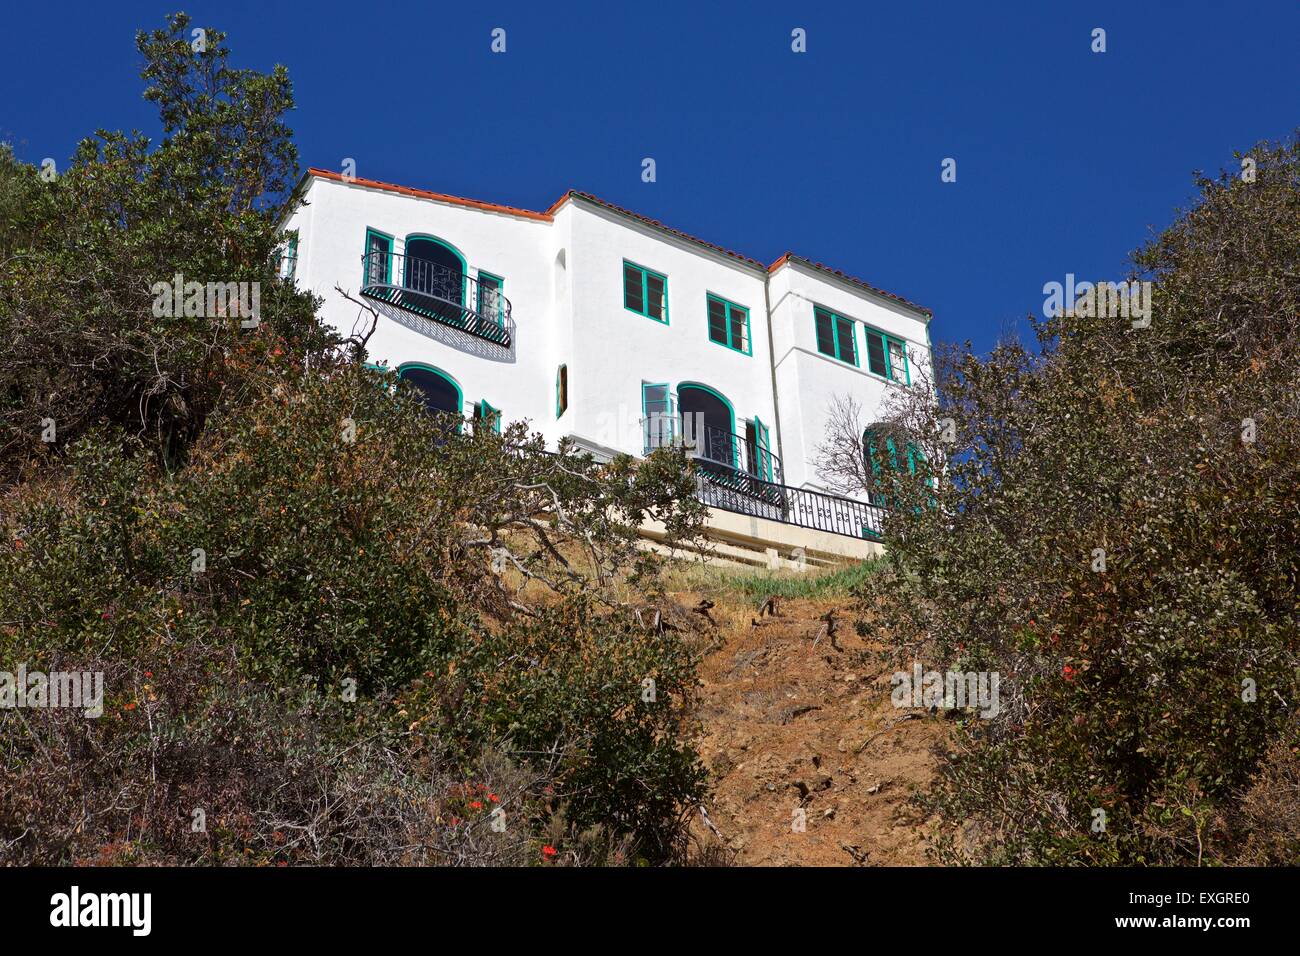 Casa residencial en el estilo mediterráneo en Avalon, Catalina Island, California. Foto de stock